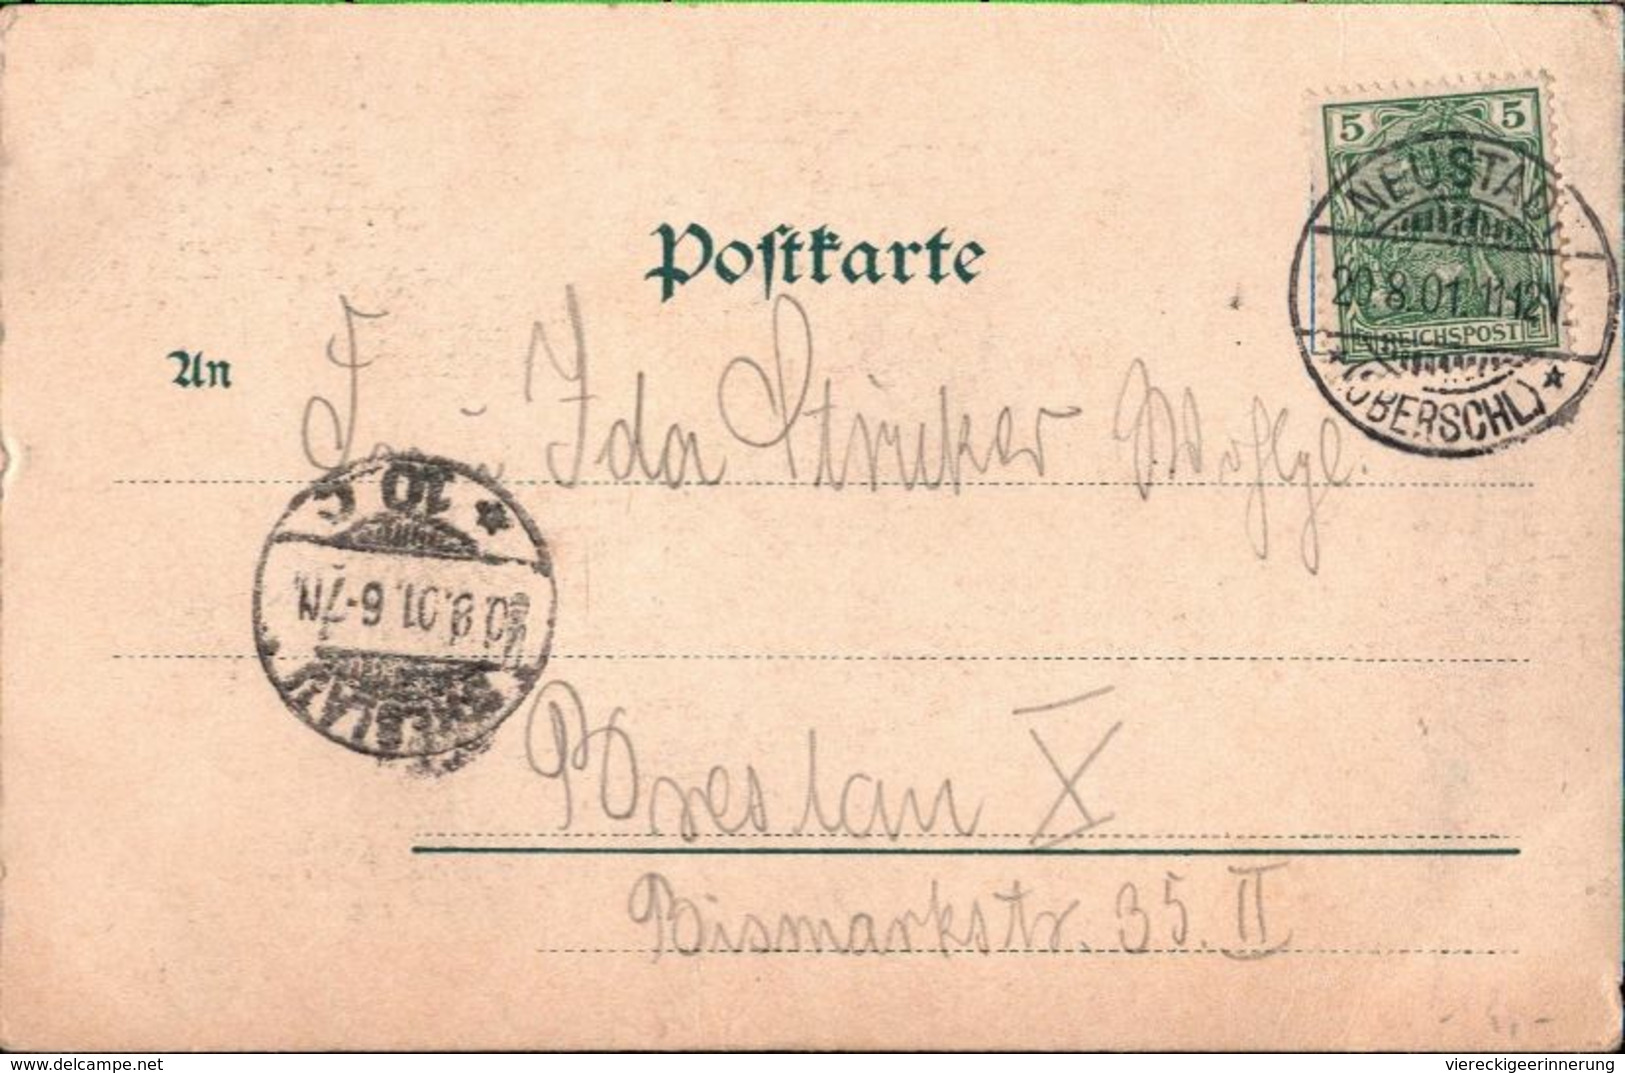 ! Alte Ansichtskarte Gruss Aus Neustadt In Oberschlesien, 1901 - Schlesien